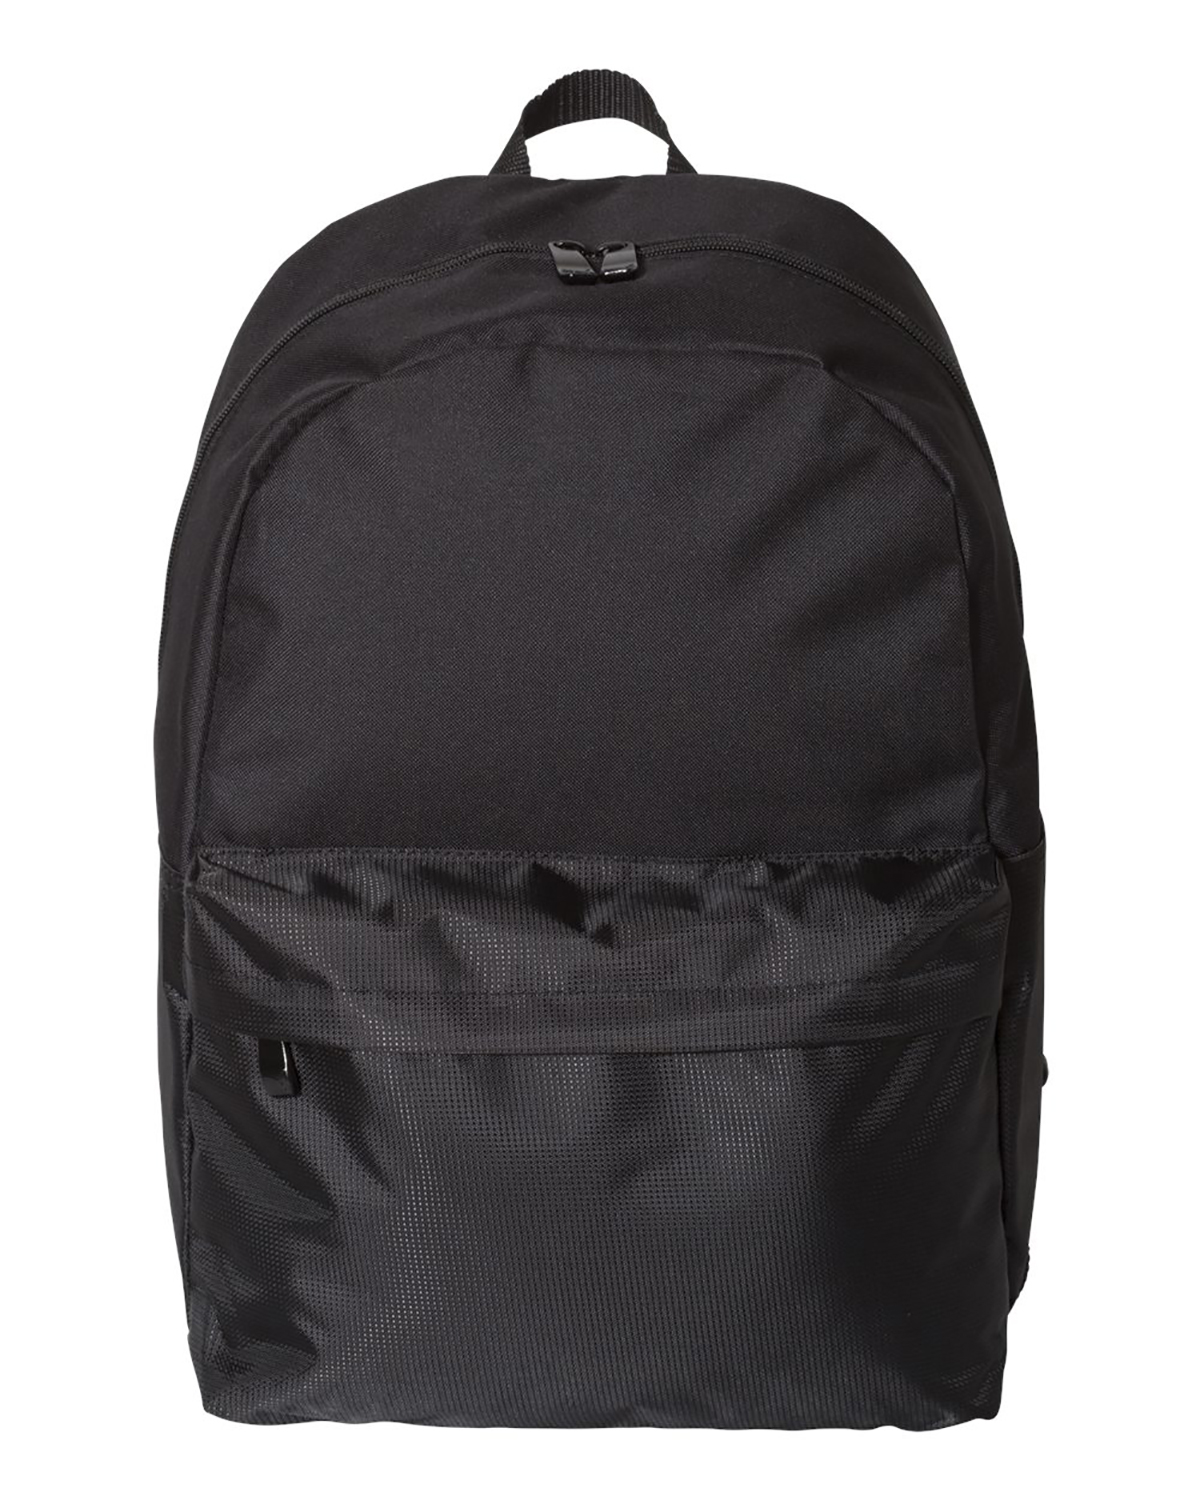 'Puma PSC1030 24L Backpack'